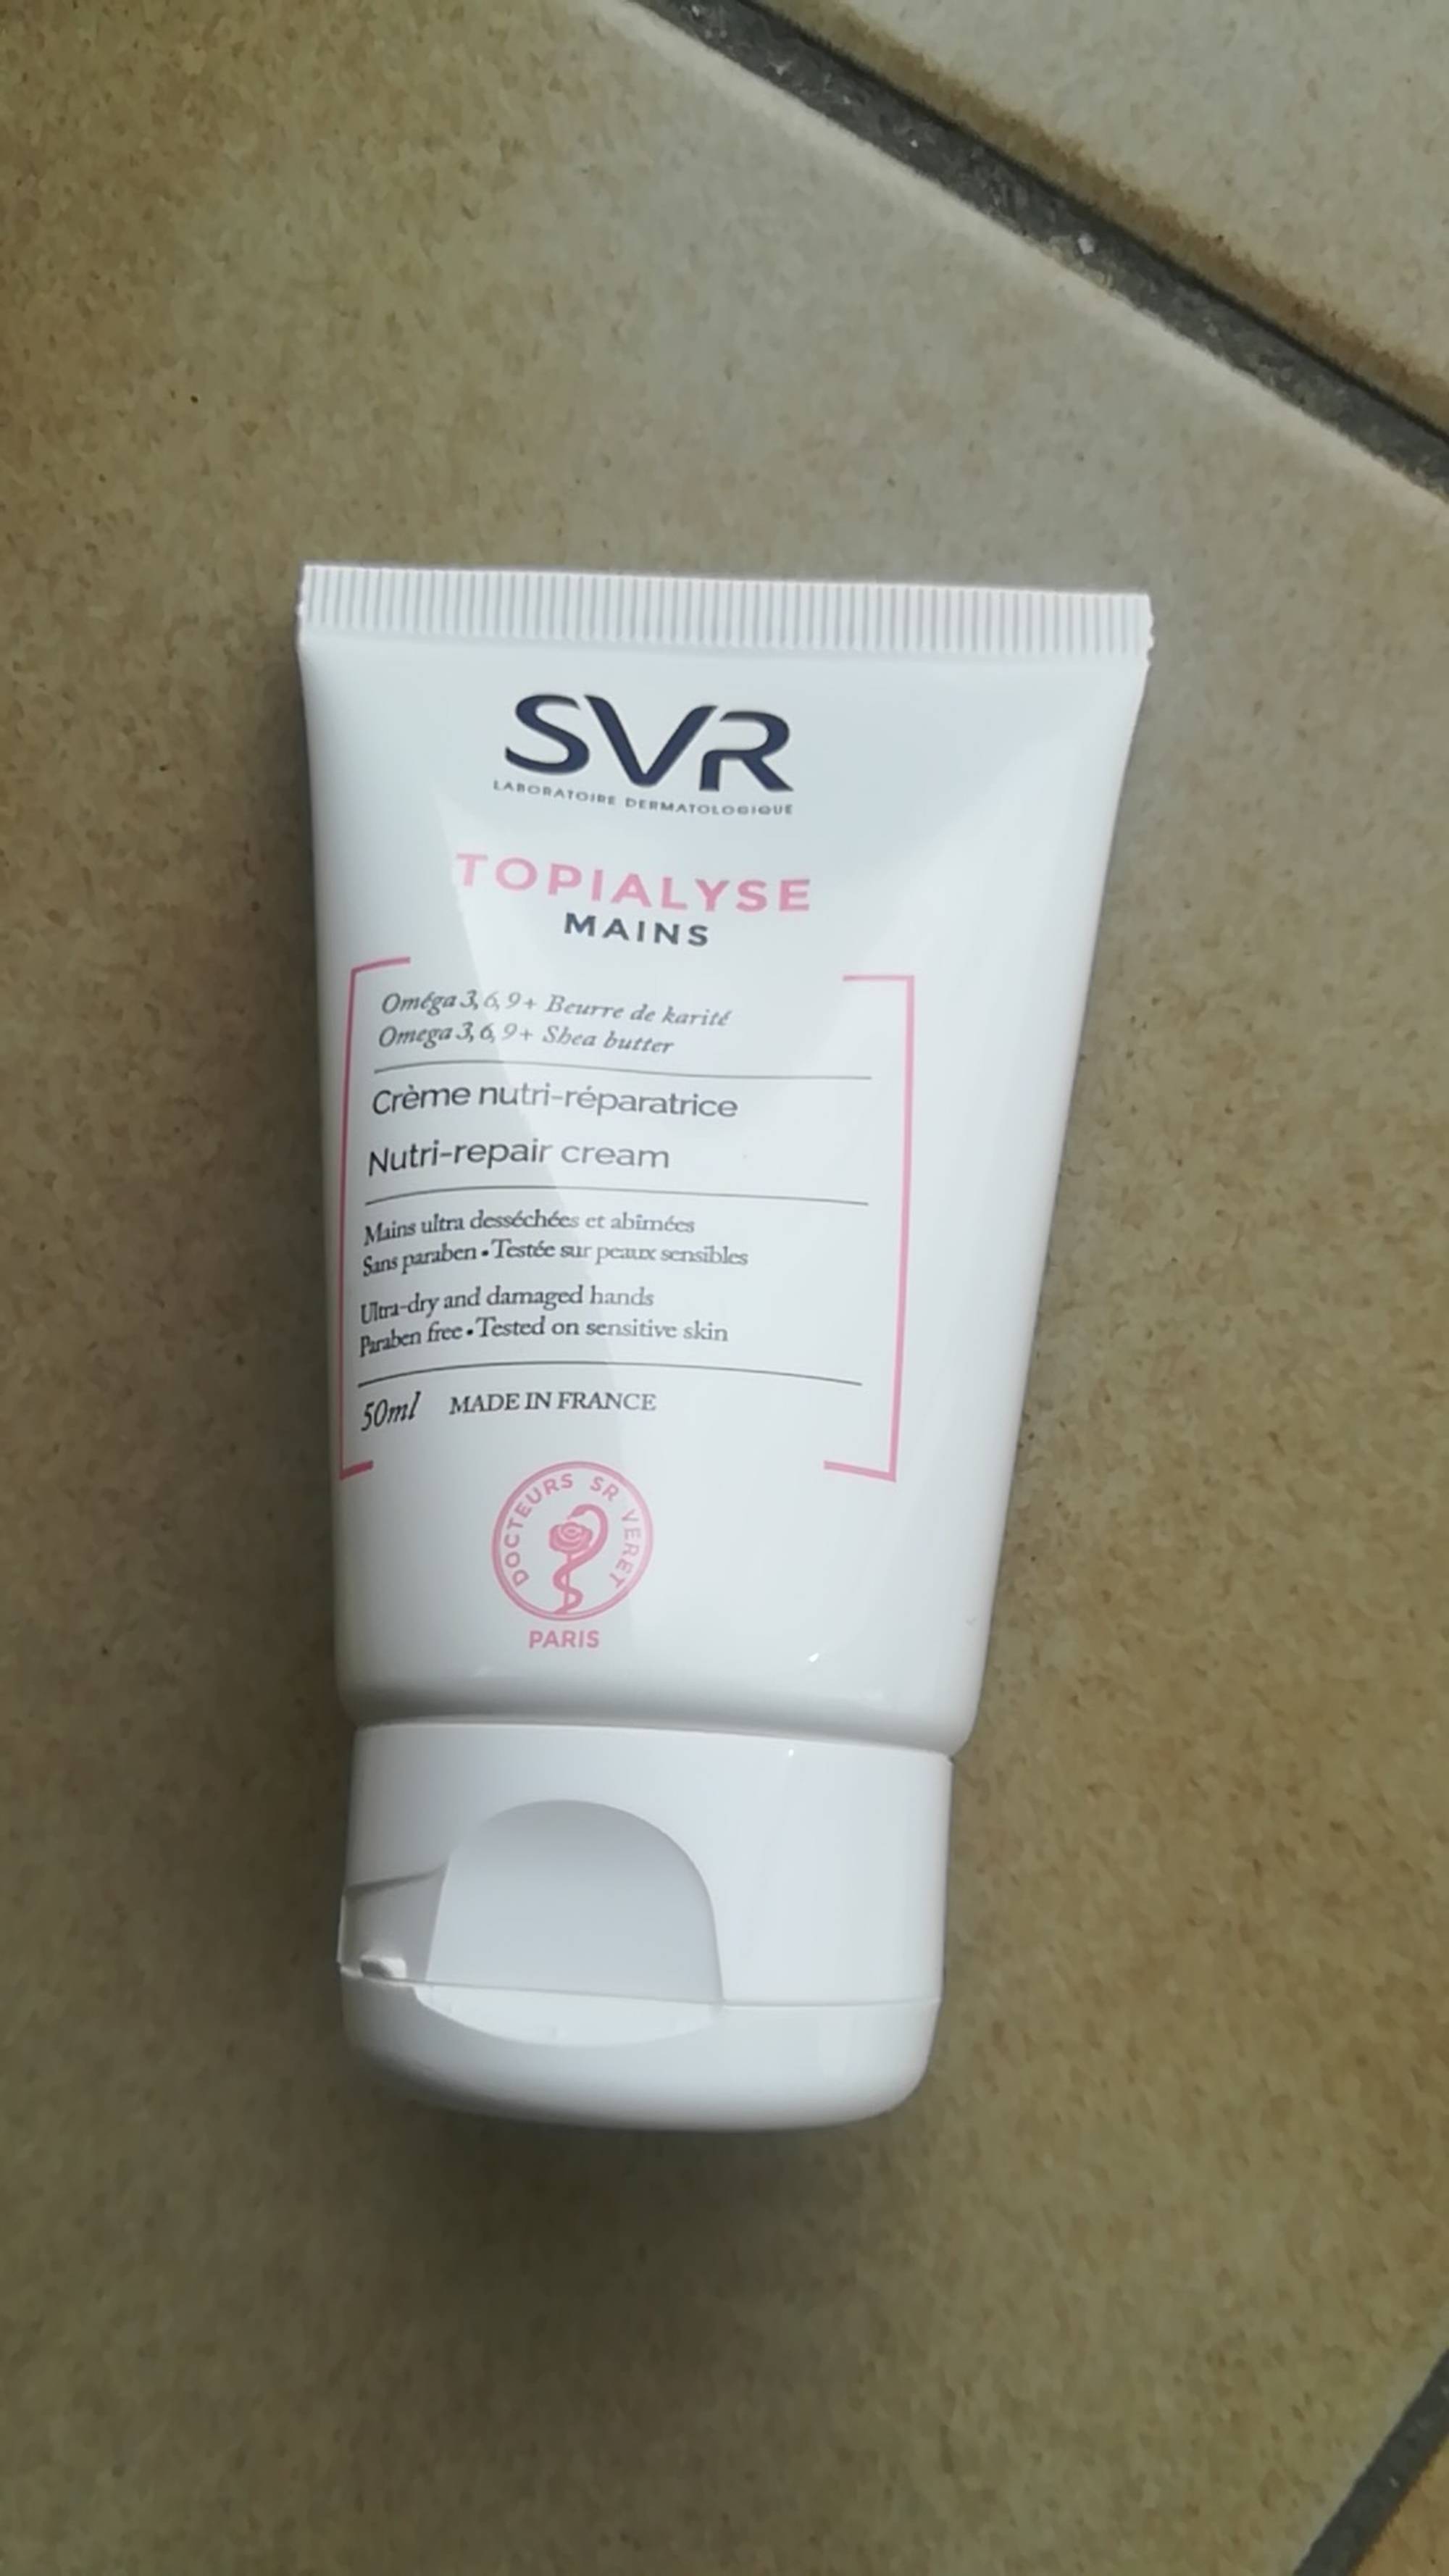 SVR - Topyalyse mains - Crème nutri-réparatrice